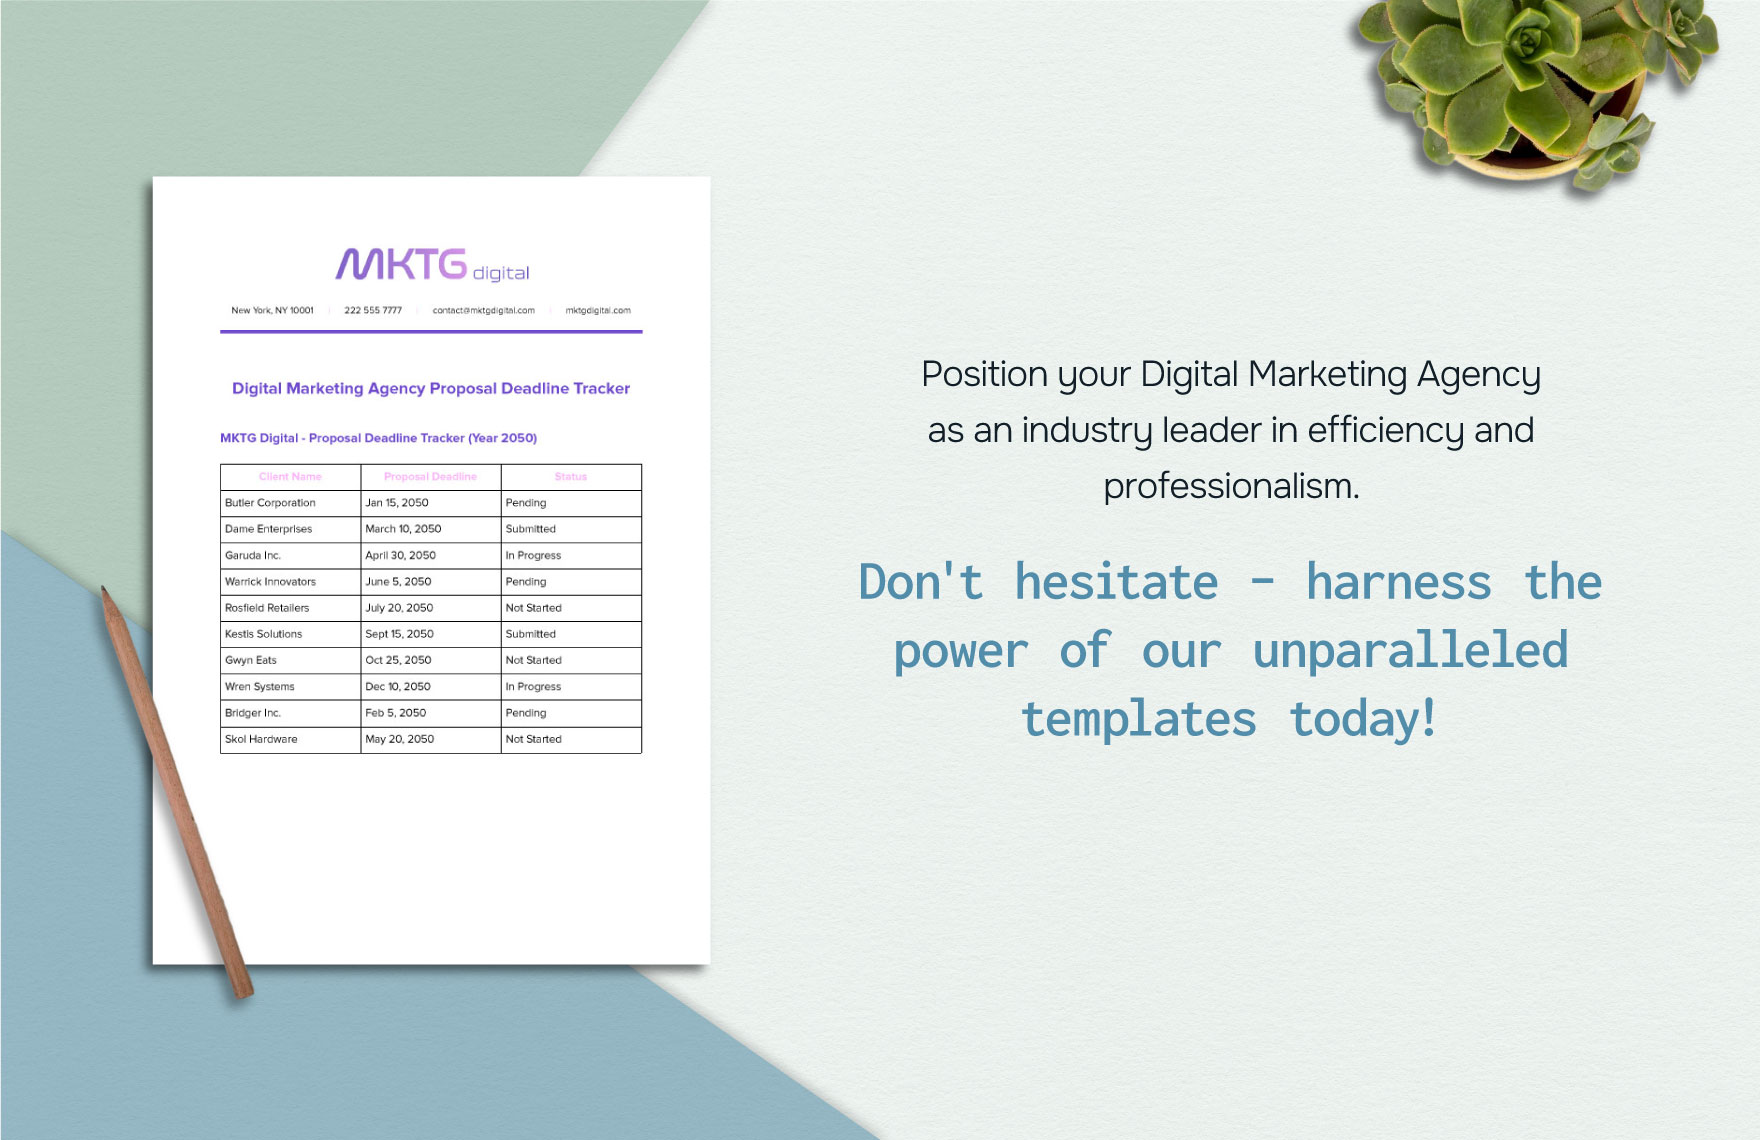 Digital Marketing Agency Proposal Deadline Tracker Template